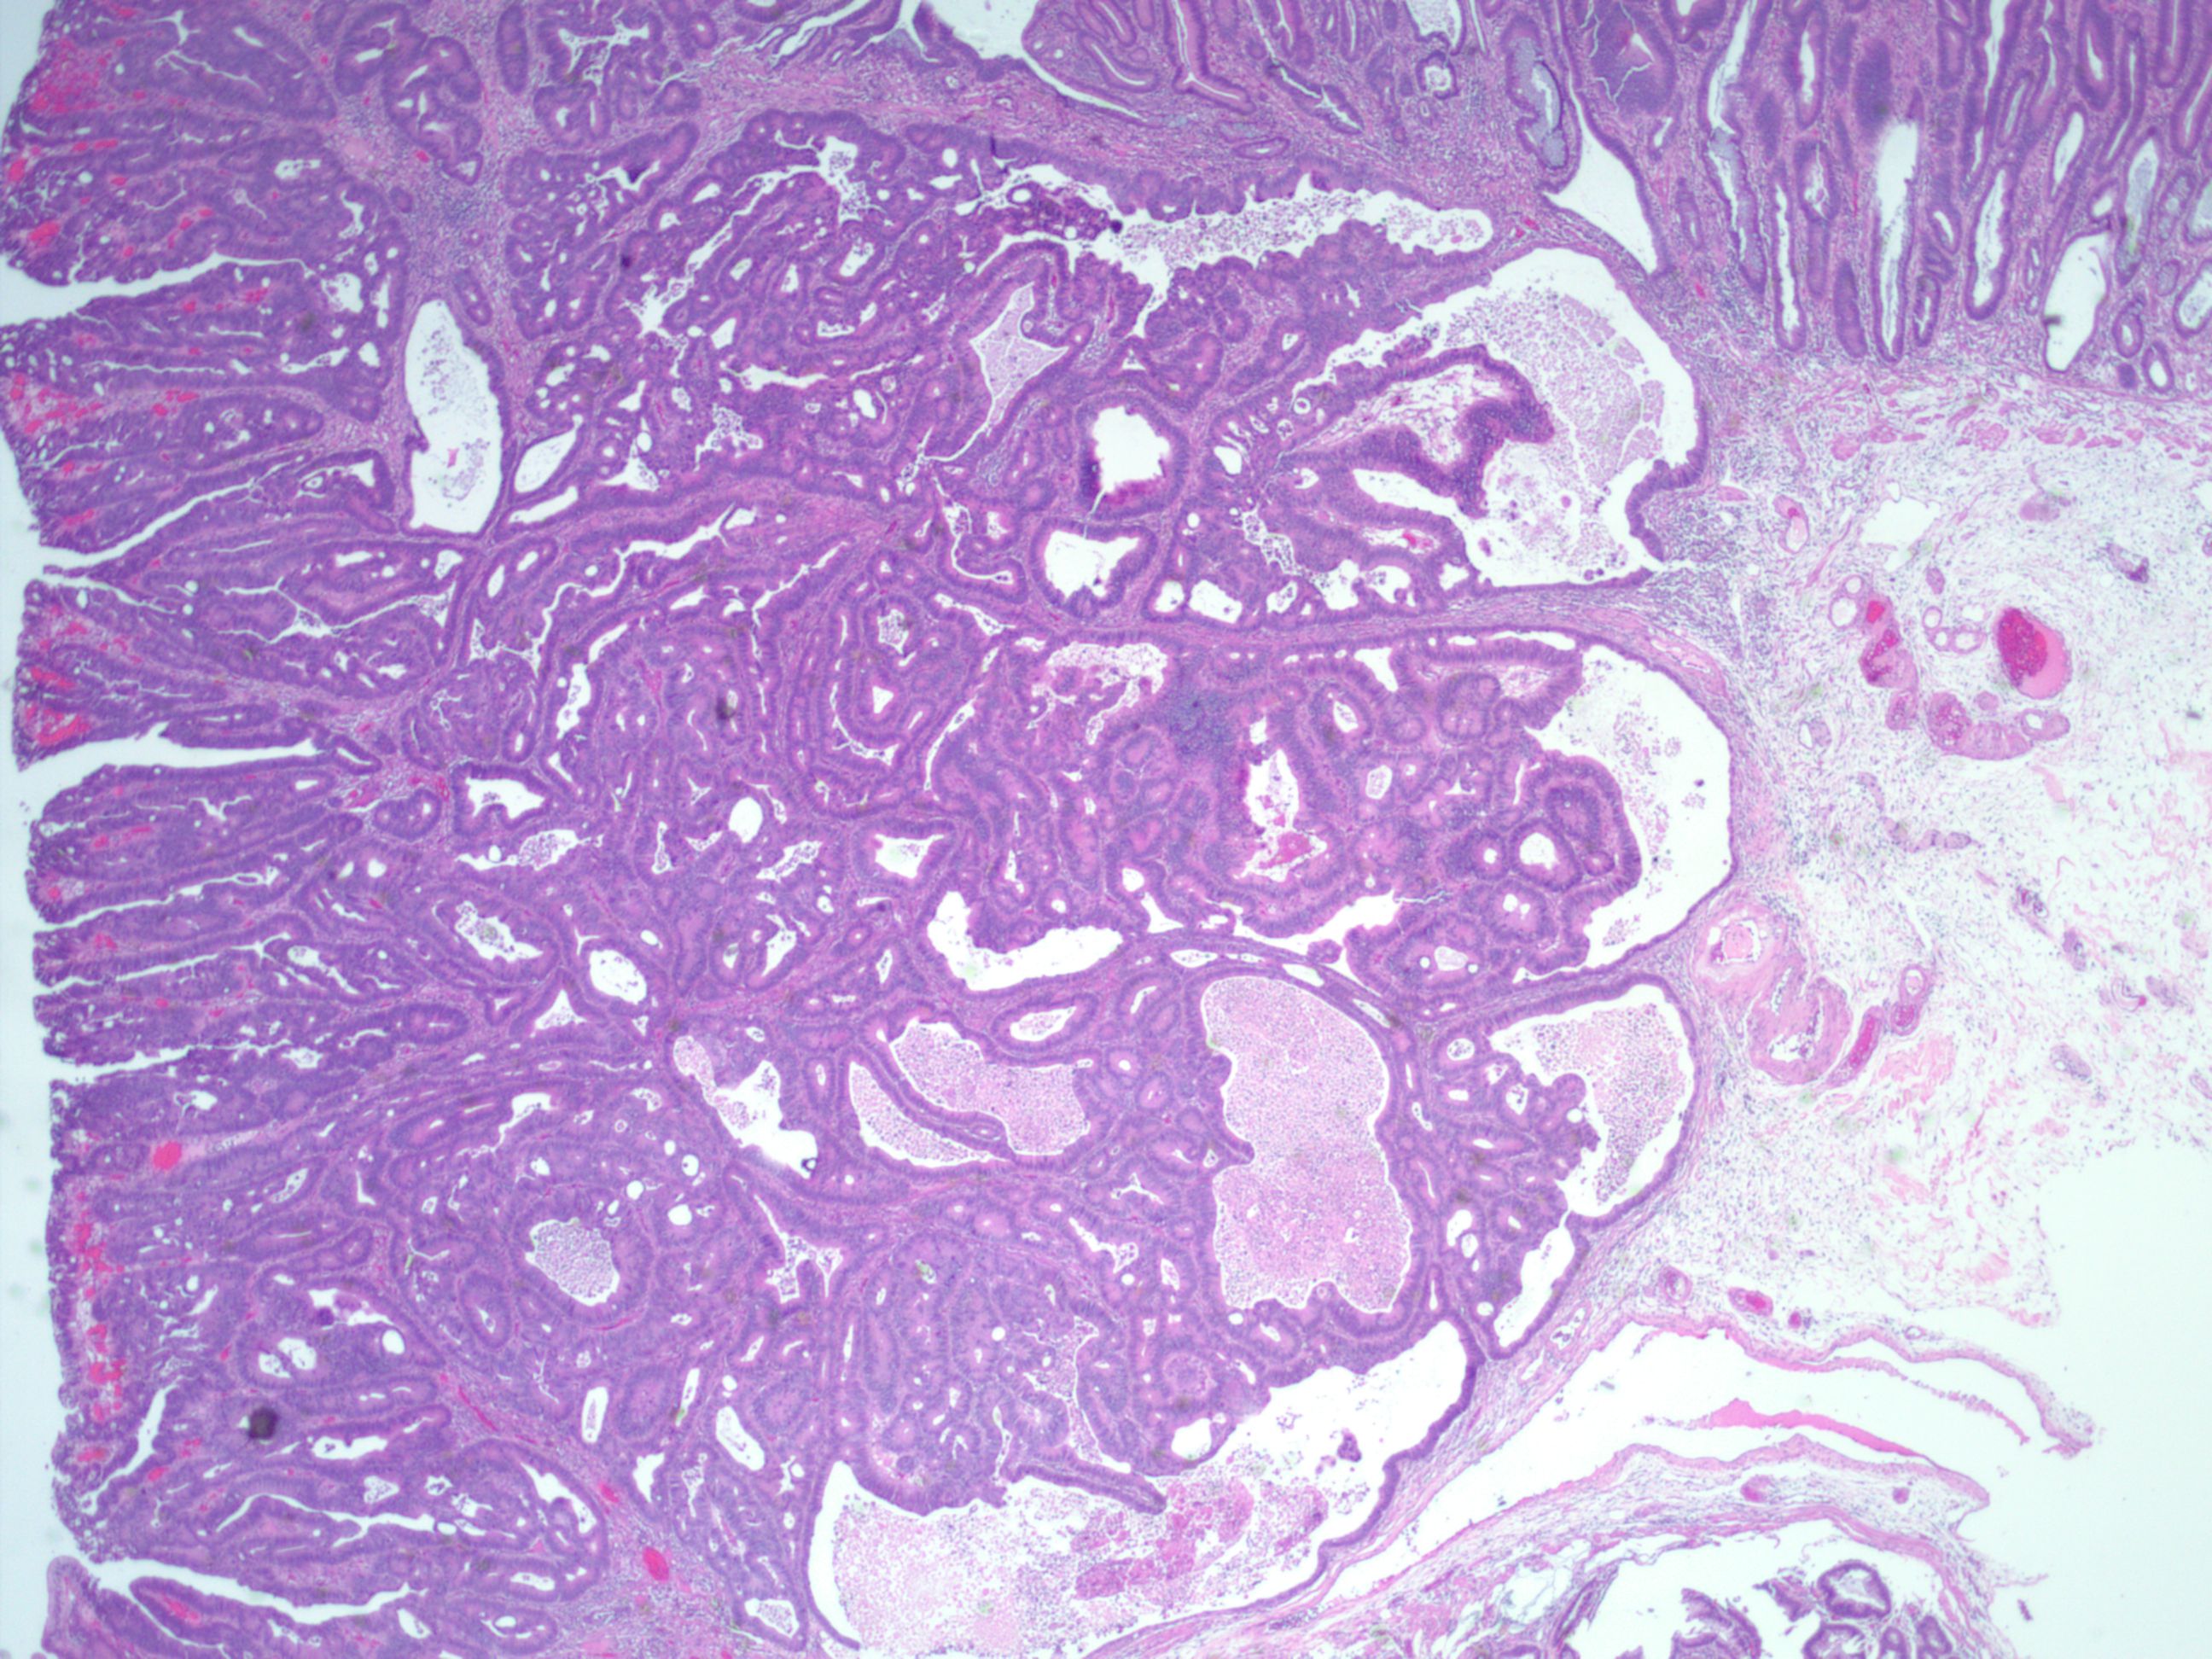 结肠管状腺瘤病理图片图片